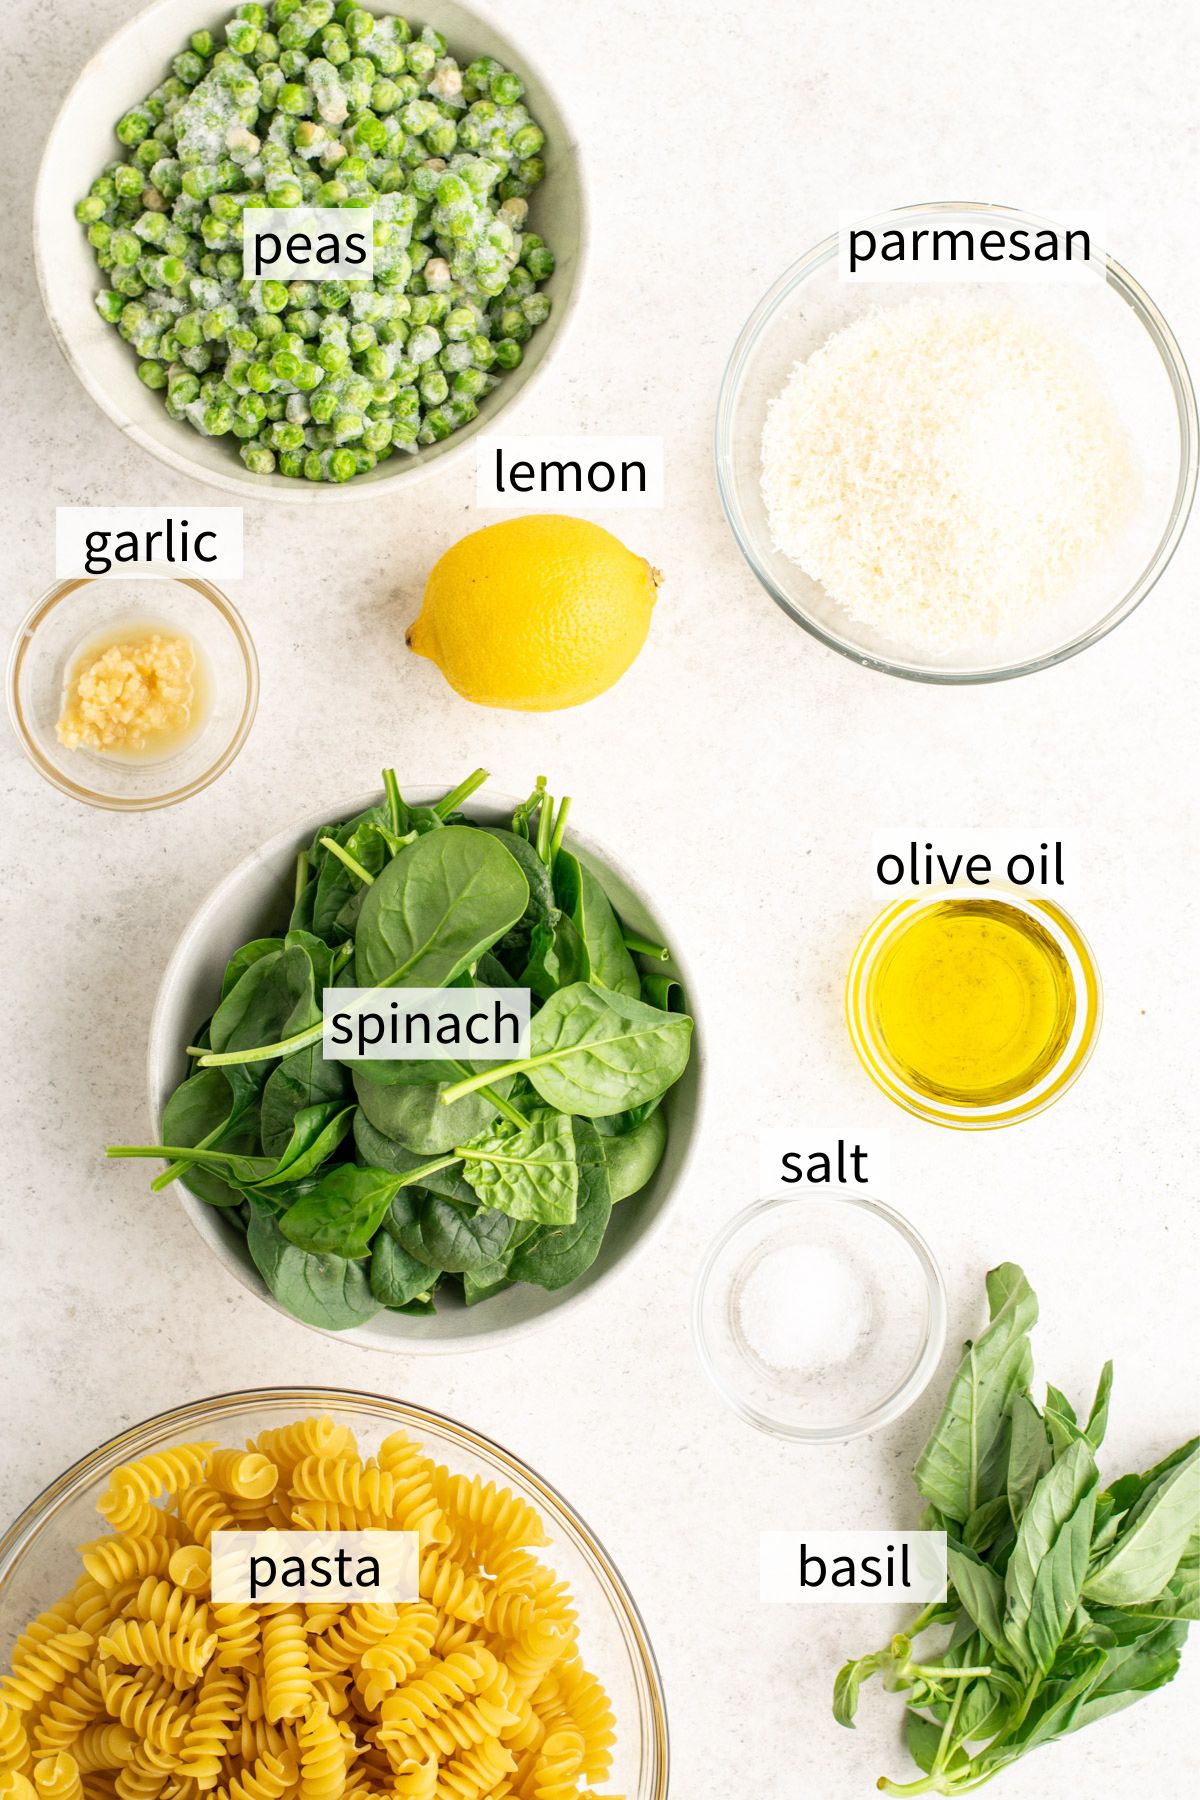 ingredients to make green pasta sauce.